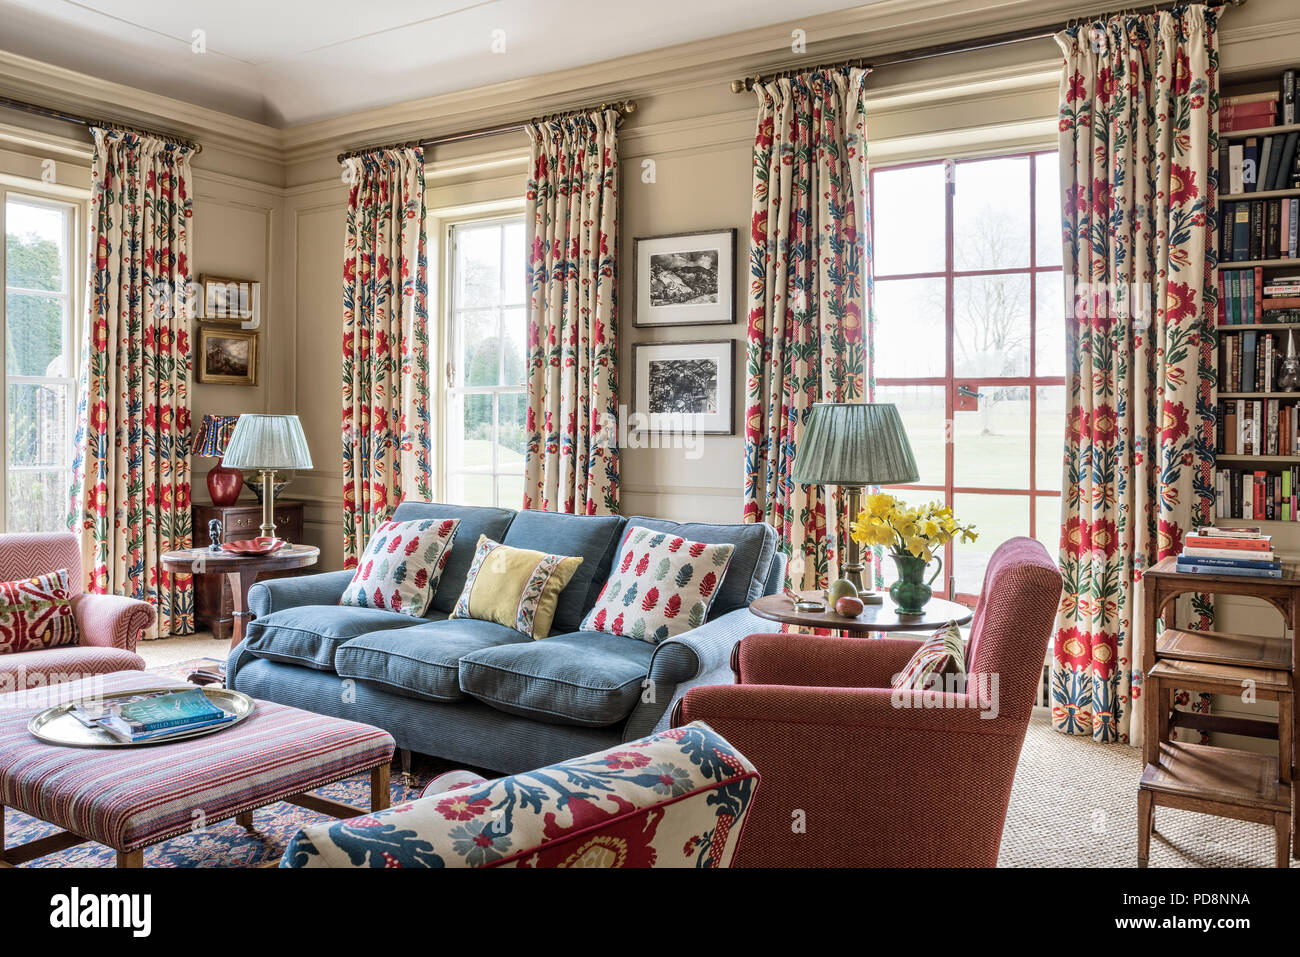 Les rideaux à fleurs jardin portes françaises dans la salle de séjour avec canapé bleu Banque D'Images